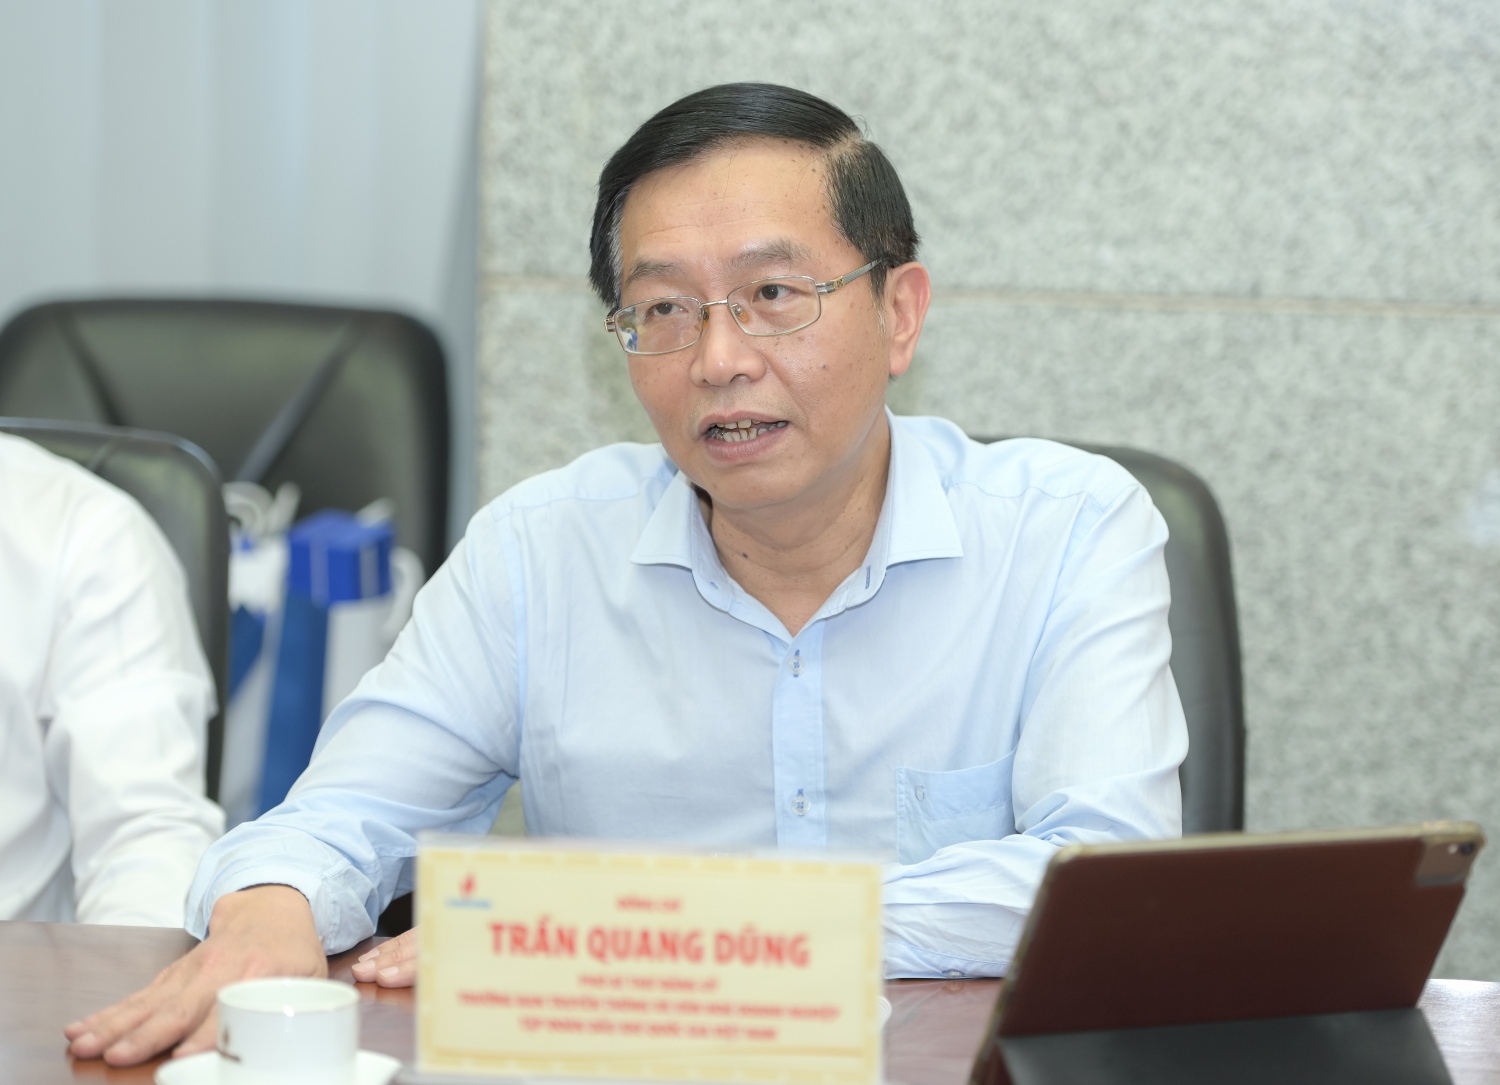 ông Trần Quang Dũng – Phó Bí thư Đảng ủy, Trưởng Ban Truyền thông và Văn hóa Doanh nghiệp Tập đoàn